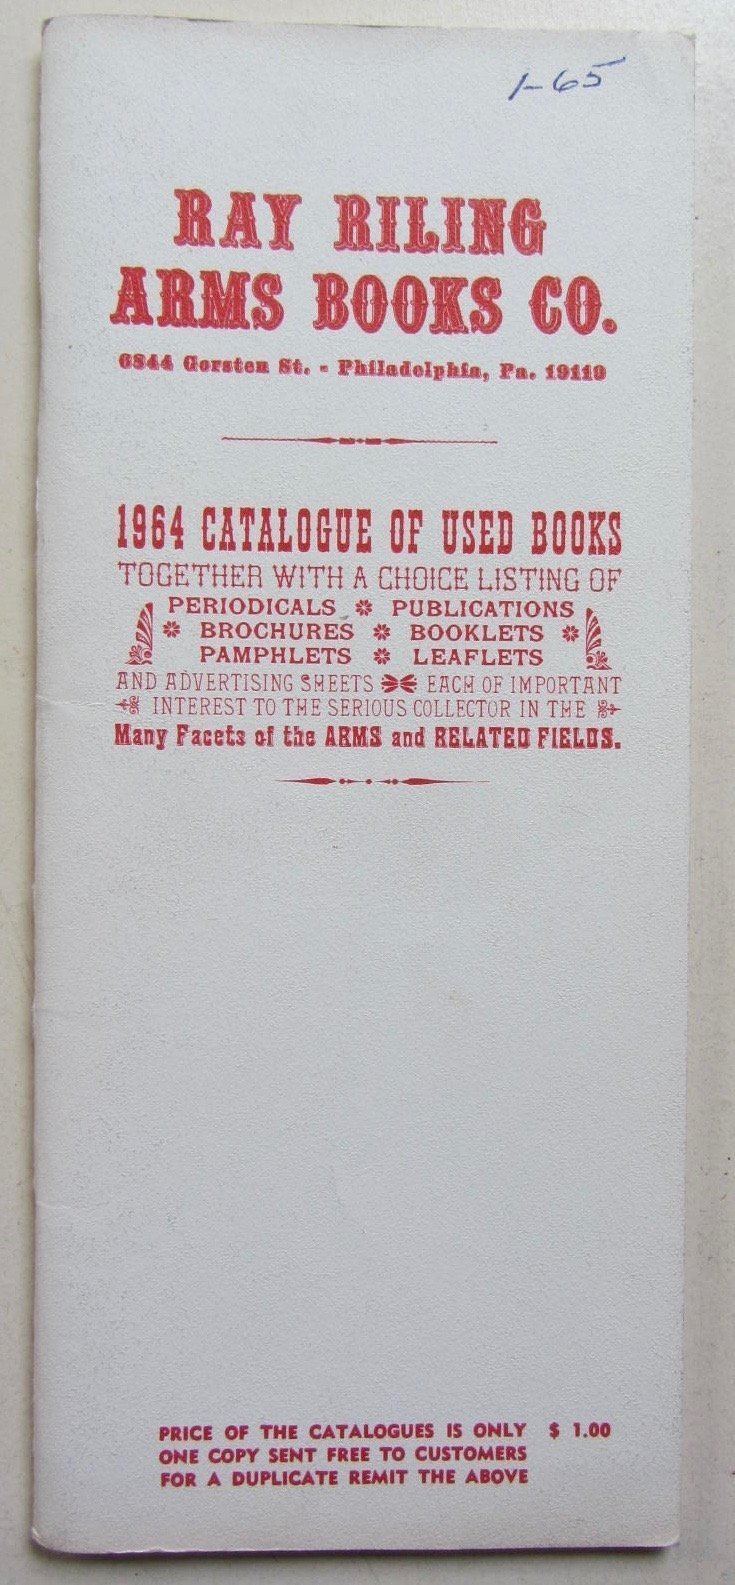 Ray Riling Ray Riling Arms Books Co 1964 Catalogue of Used Books Ray Riling